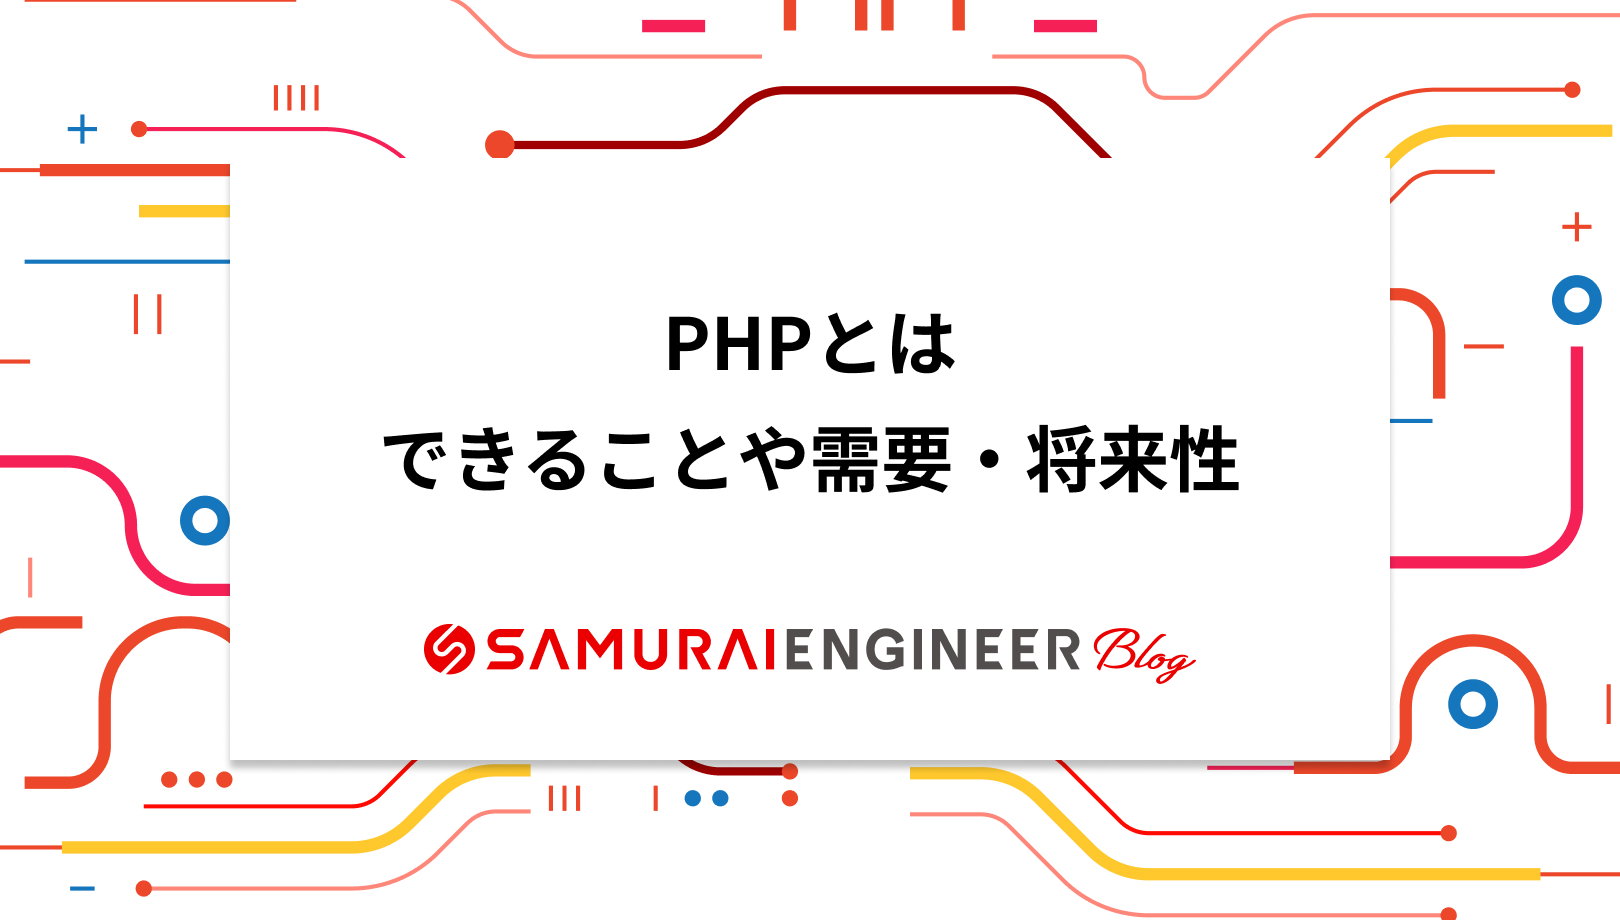 PHPとは何かわかりやすく解説！できることや将来性、学習方法も紹介